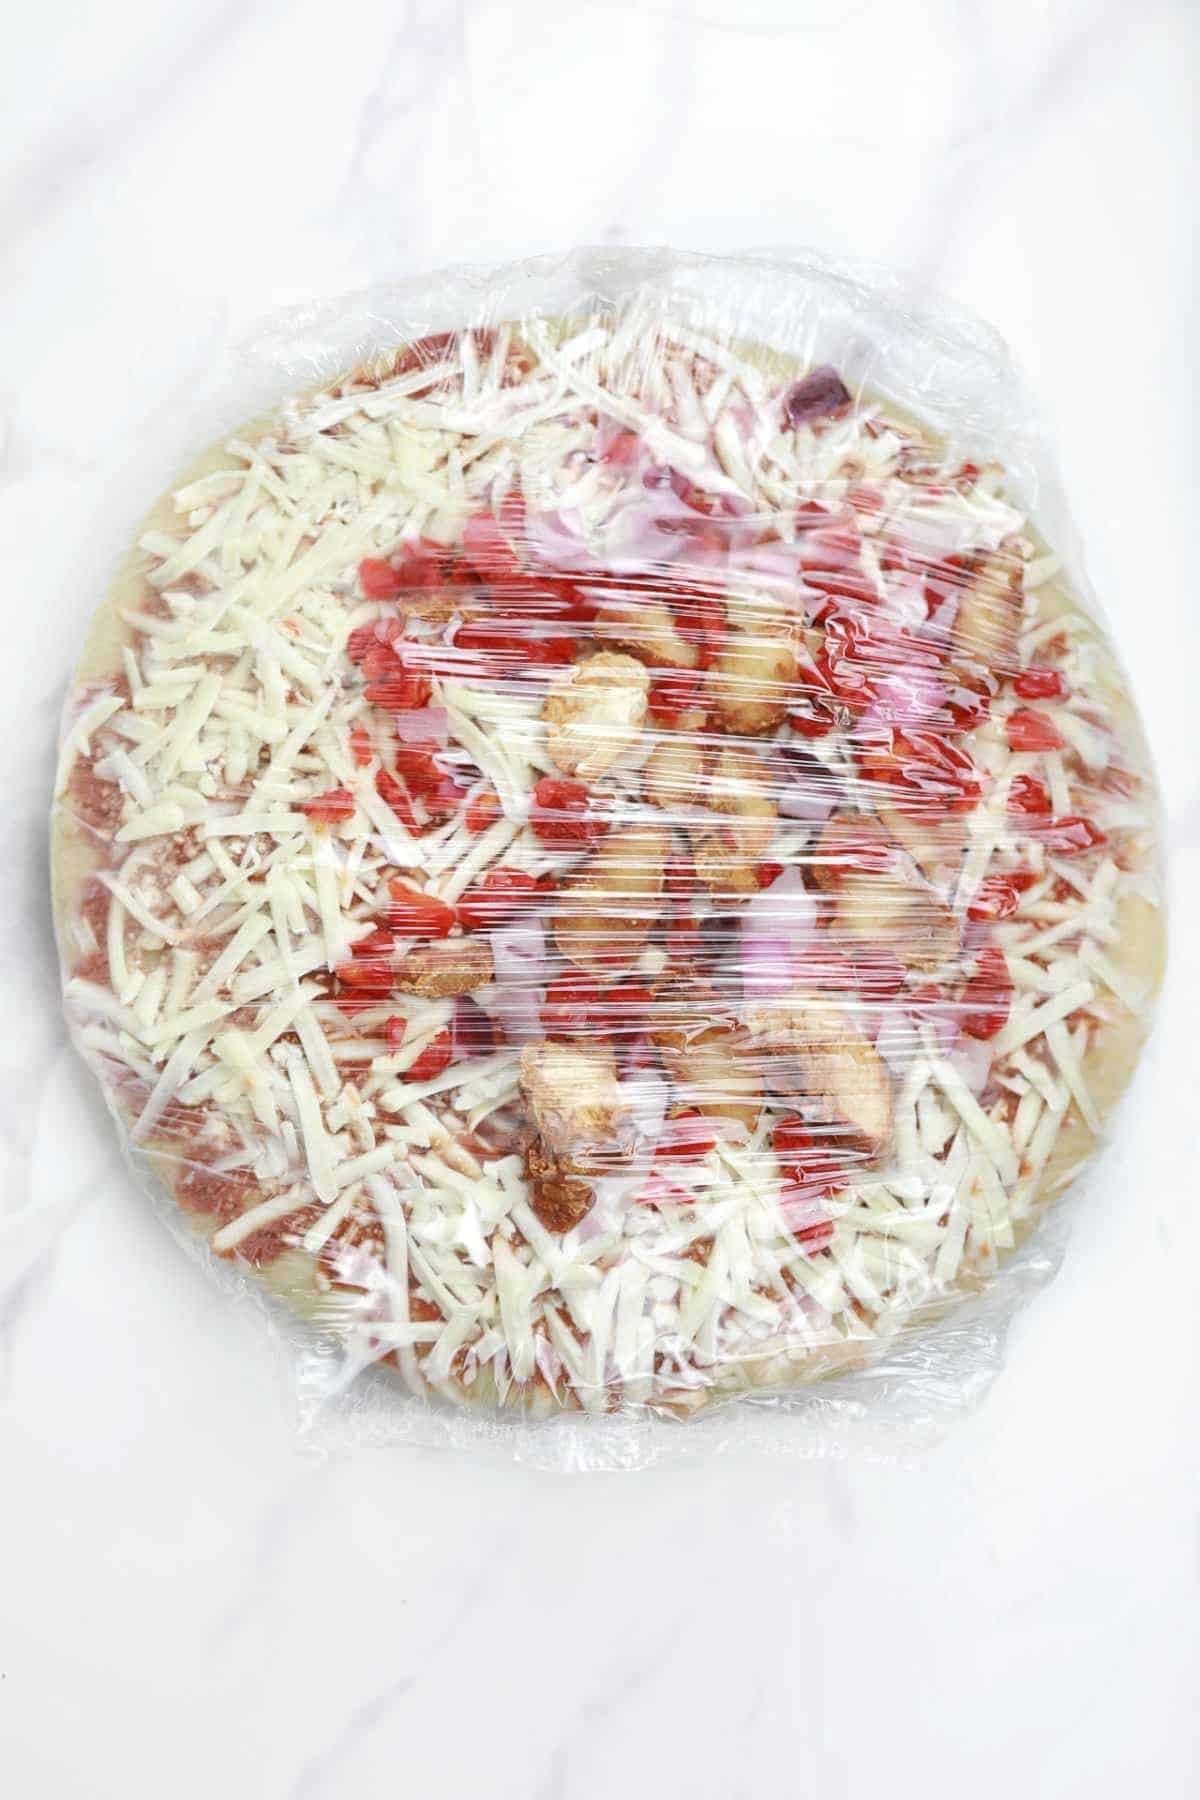 frozen pizza in packaging.